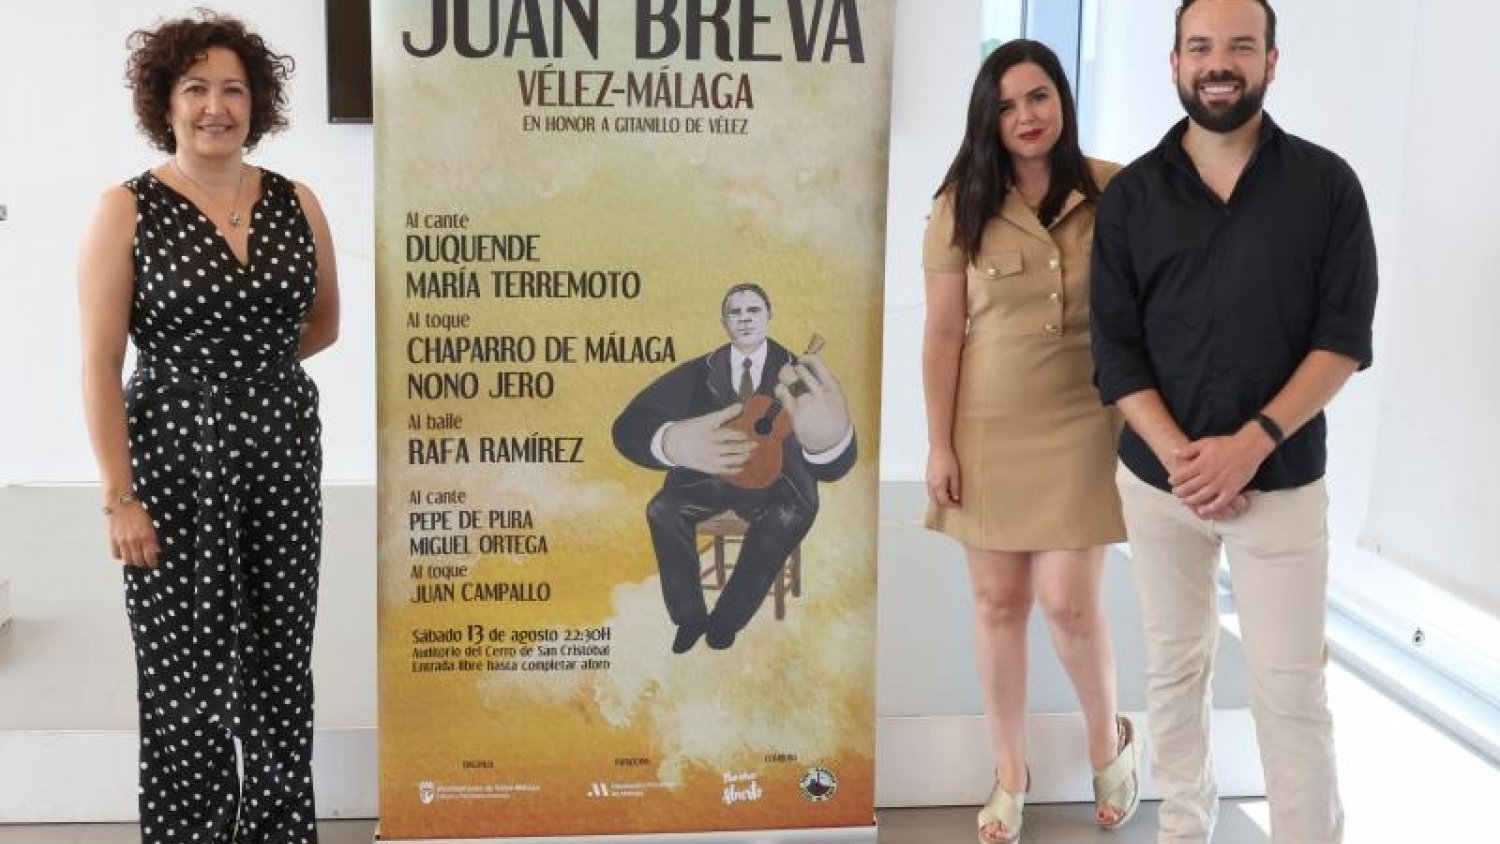 Duquende, María Terremoto y Rafa Ramírez, protagonistas en el Festival Flamenco 'Juan Breva' de Vélez-Málaga